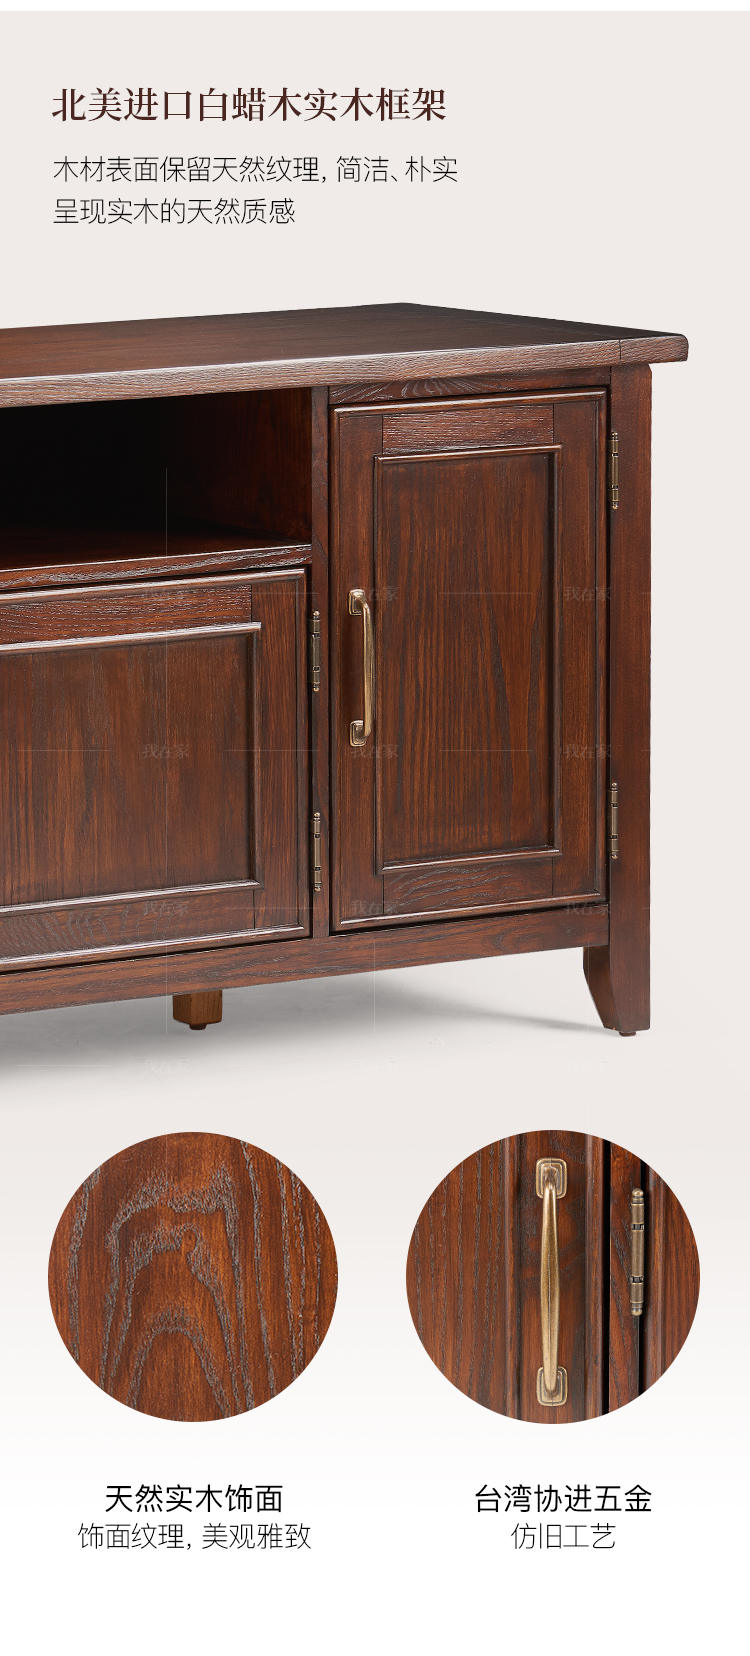 简约美式风格克莱顿电视柜的家具详细介绍